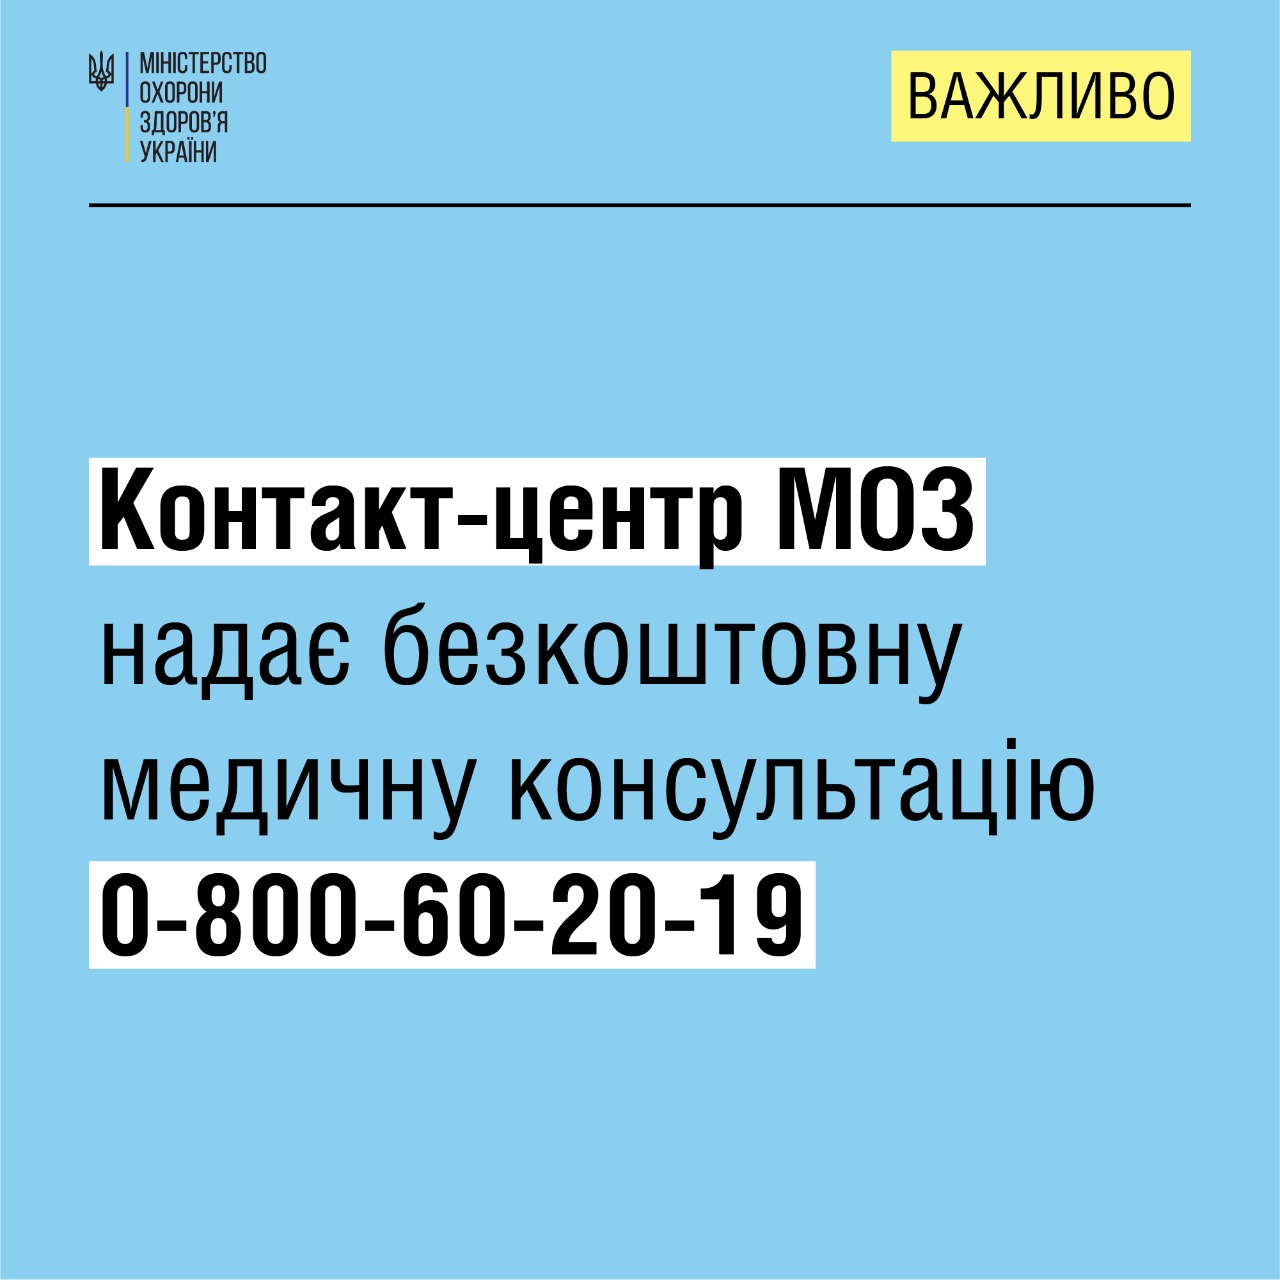 Українці можуть отримати безкоштовну медичну консультацію через контакт-центр МОЗ